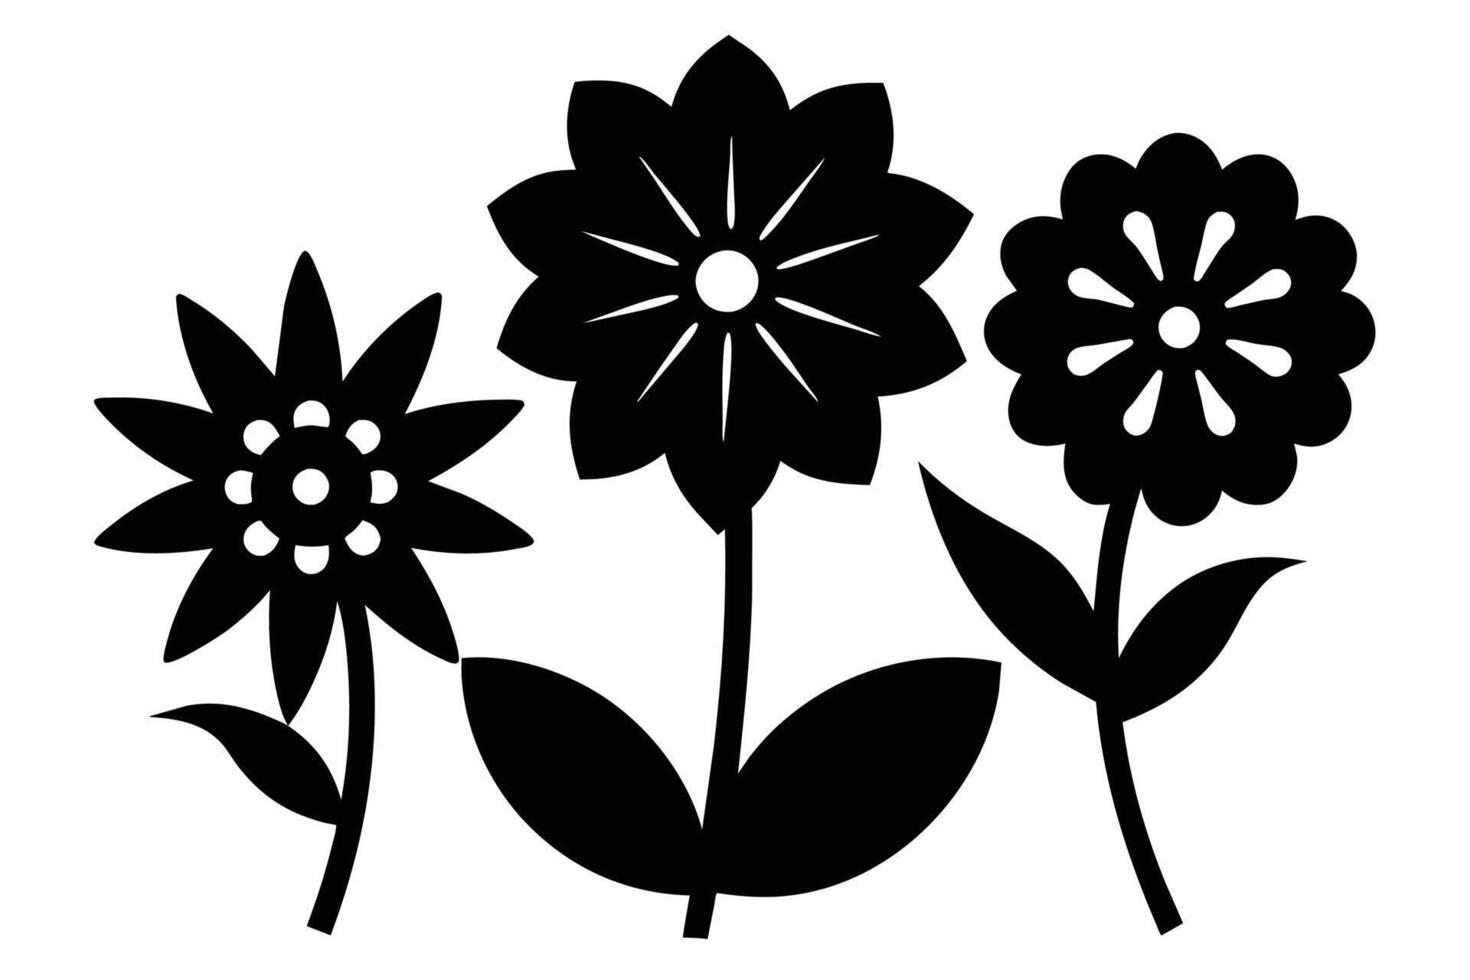 negro separar símbolos de flores vector